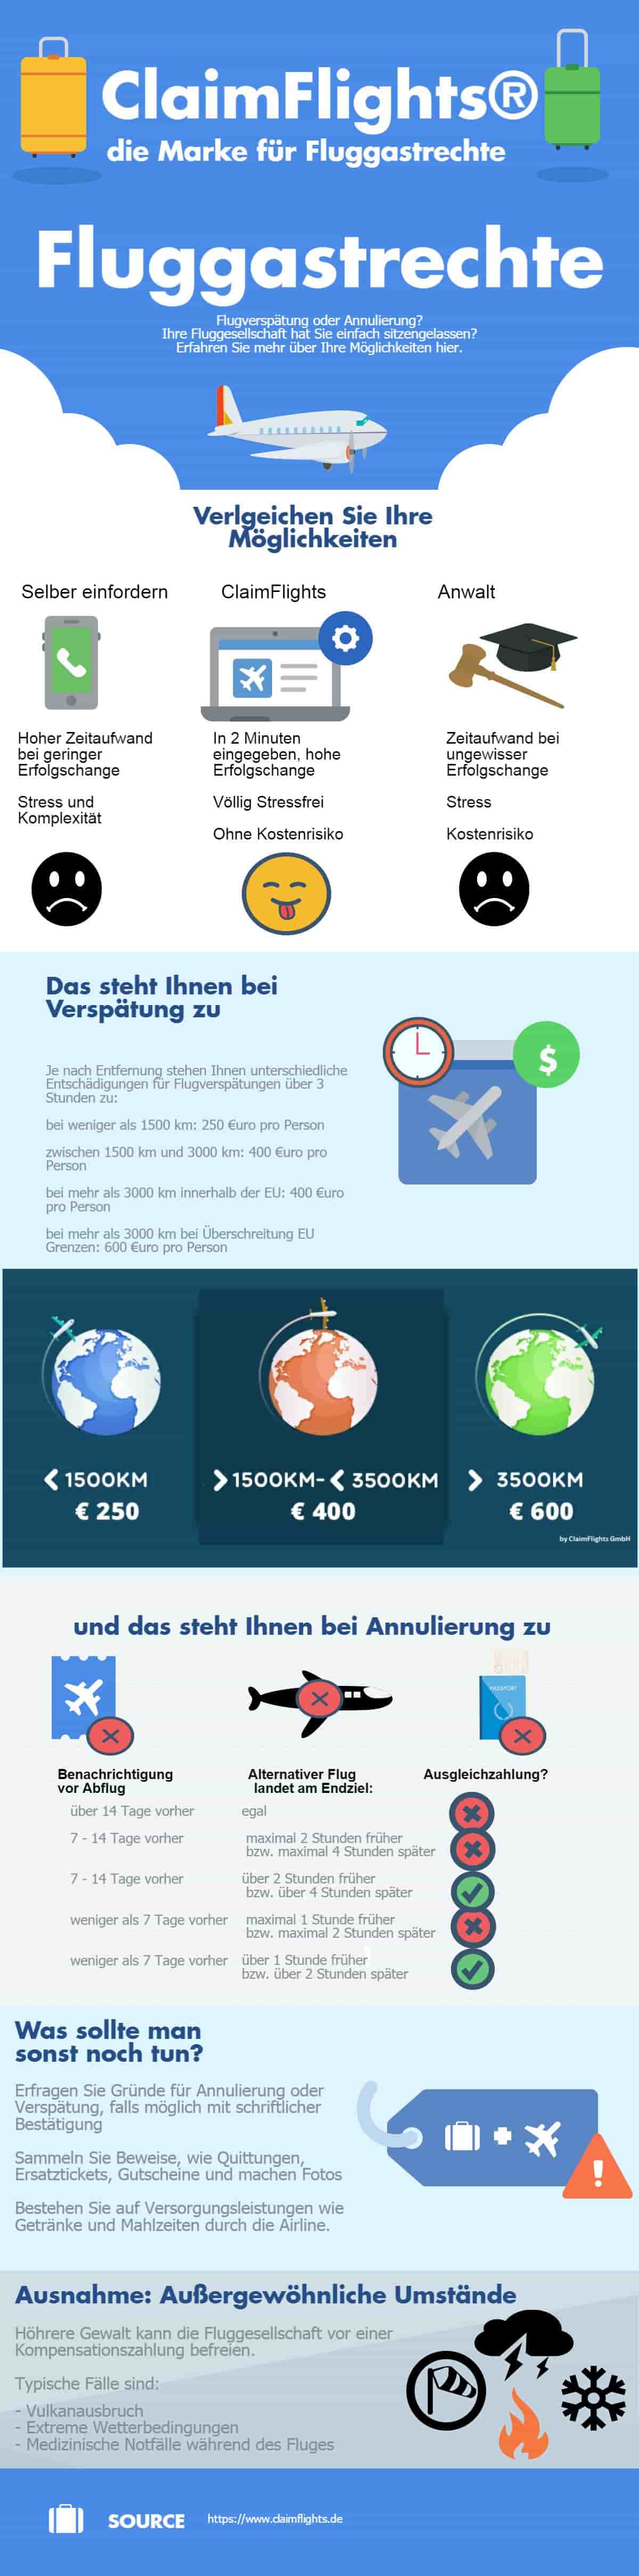 Fluggastrechte Infographic